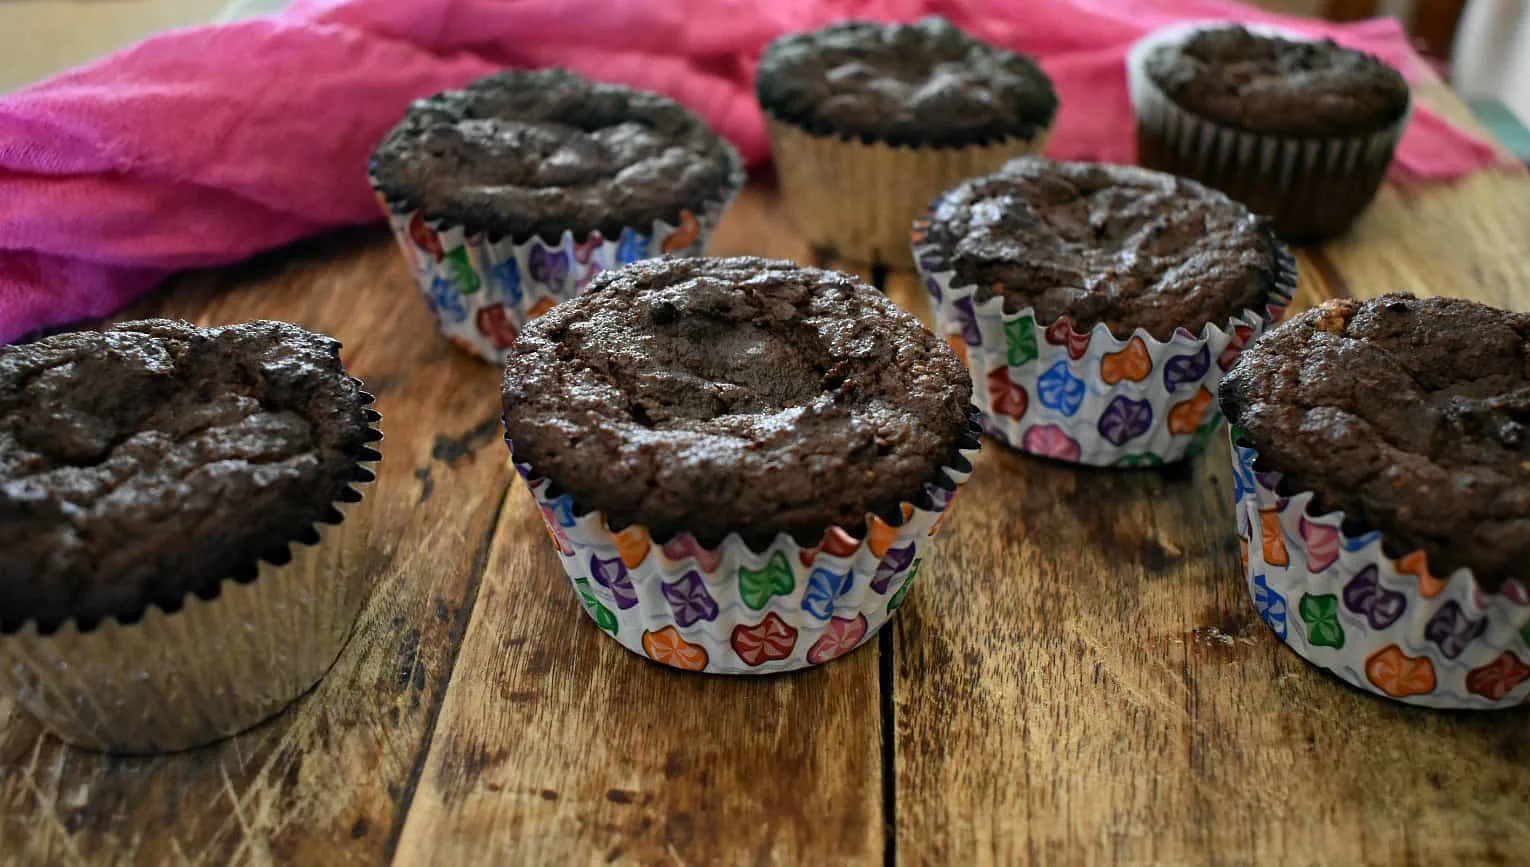 Keto chocolate cupcakes